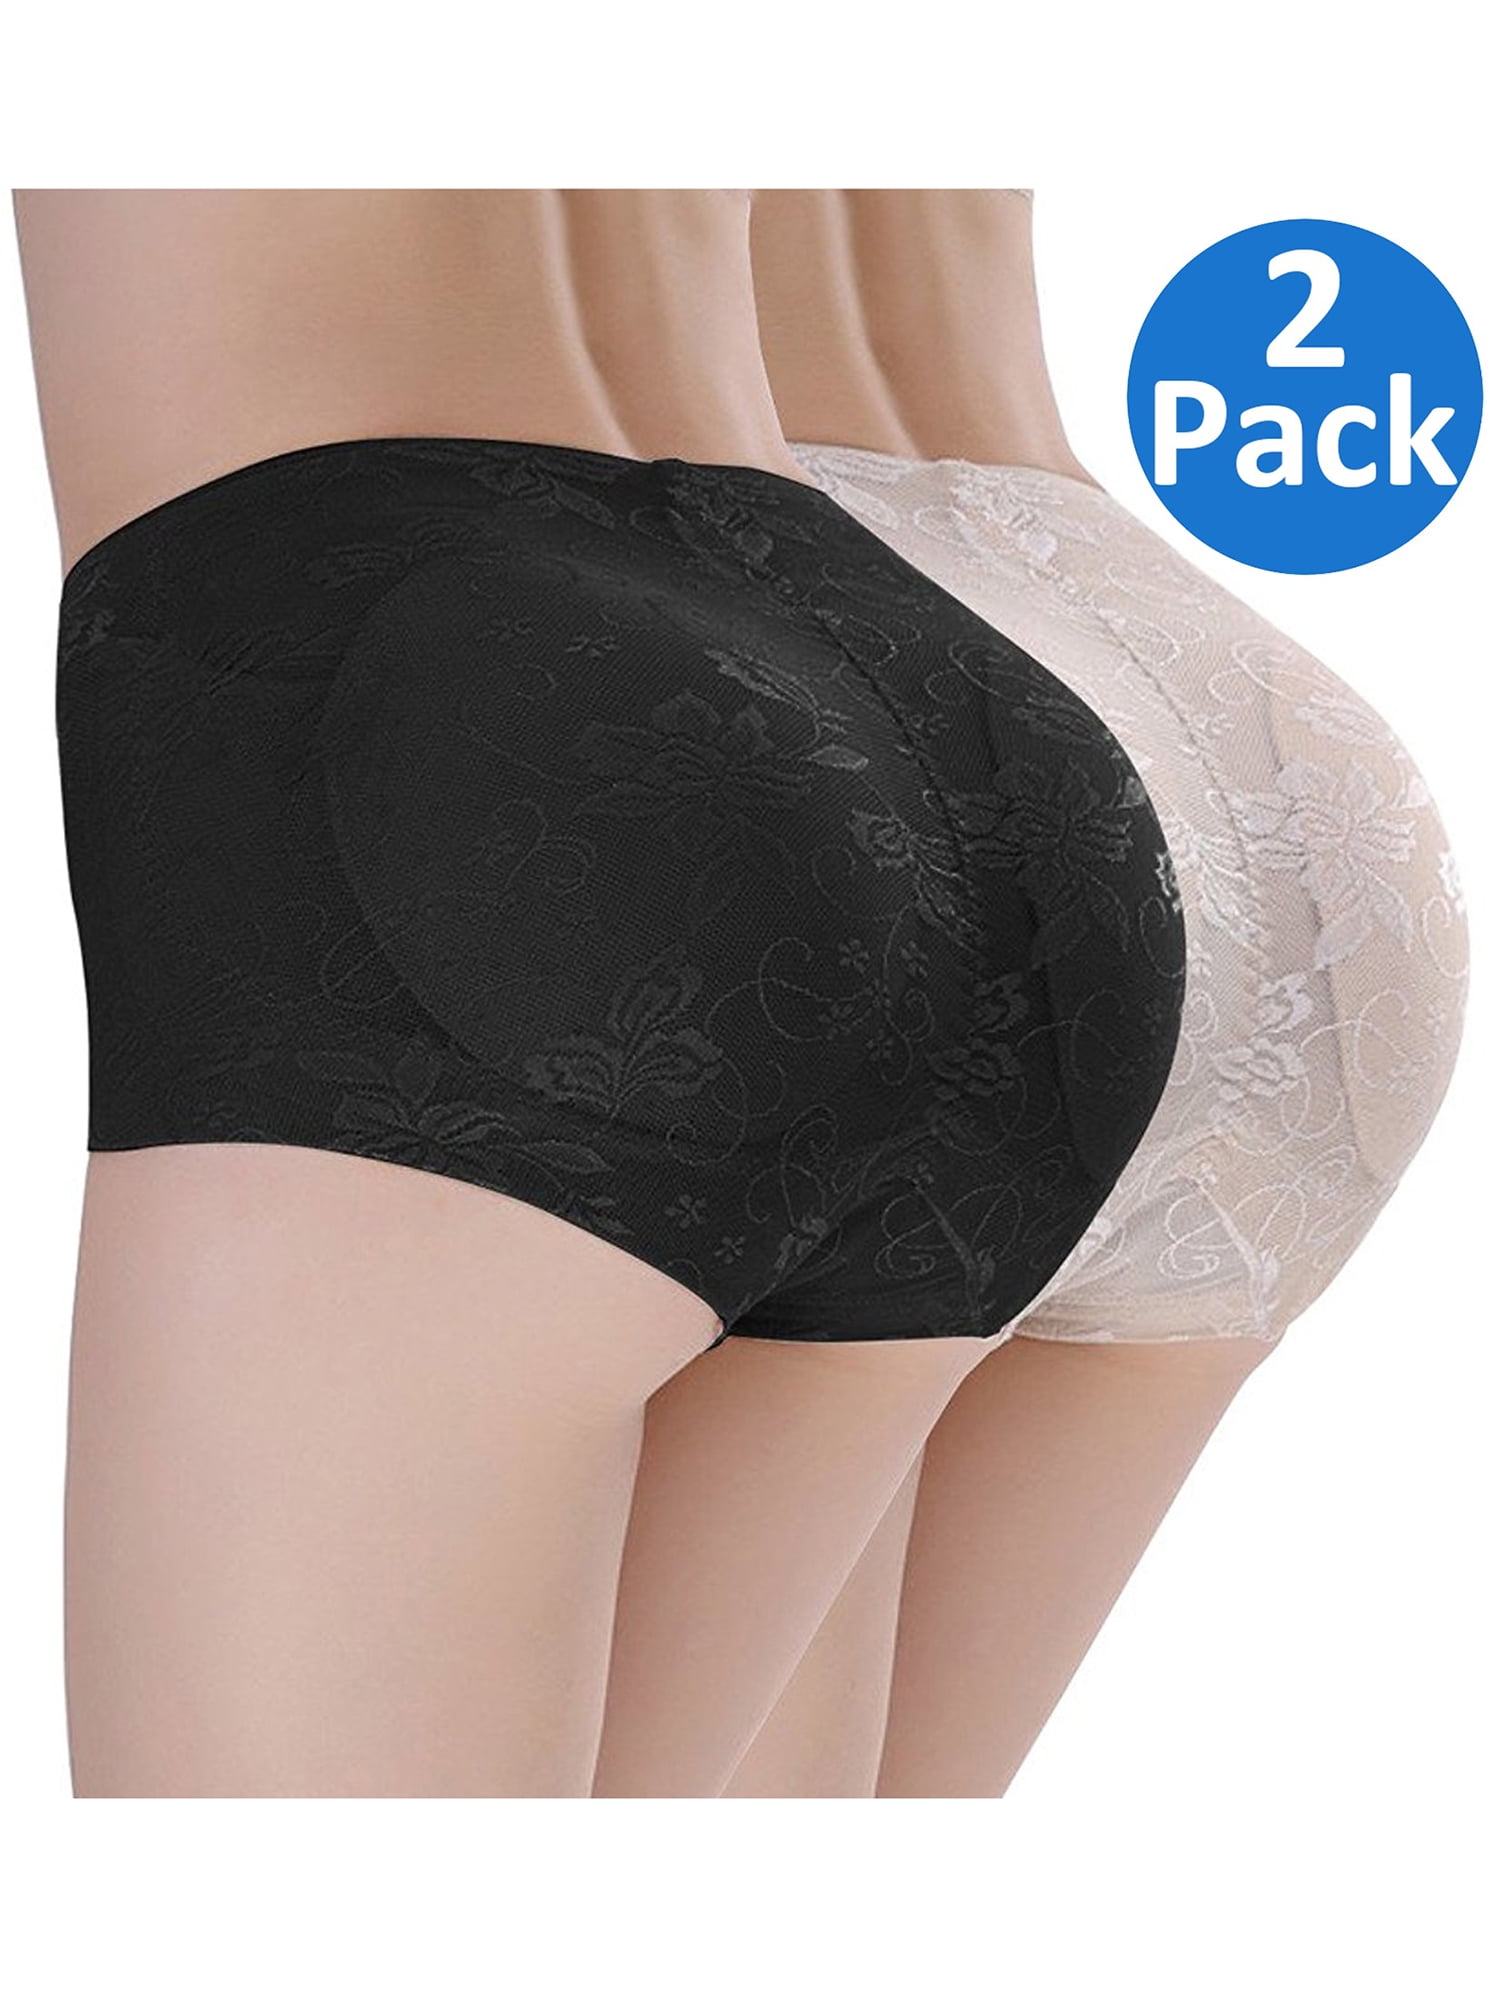 Womens Butt Lift Padded Panties Shaperwear Control Shorts Seamless Underwear Enhancer Body Shaper,fg60 